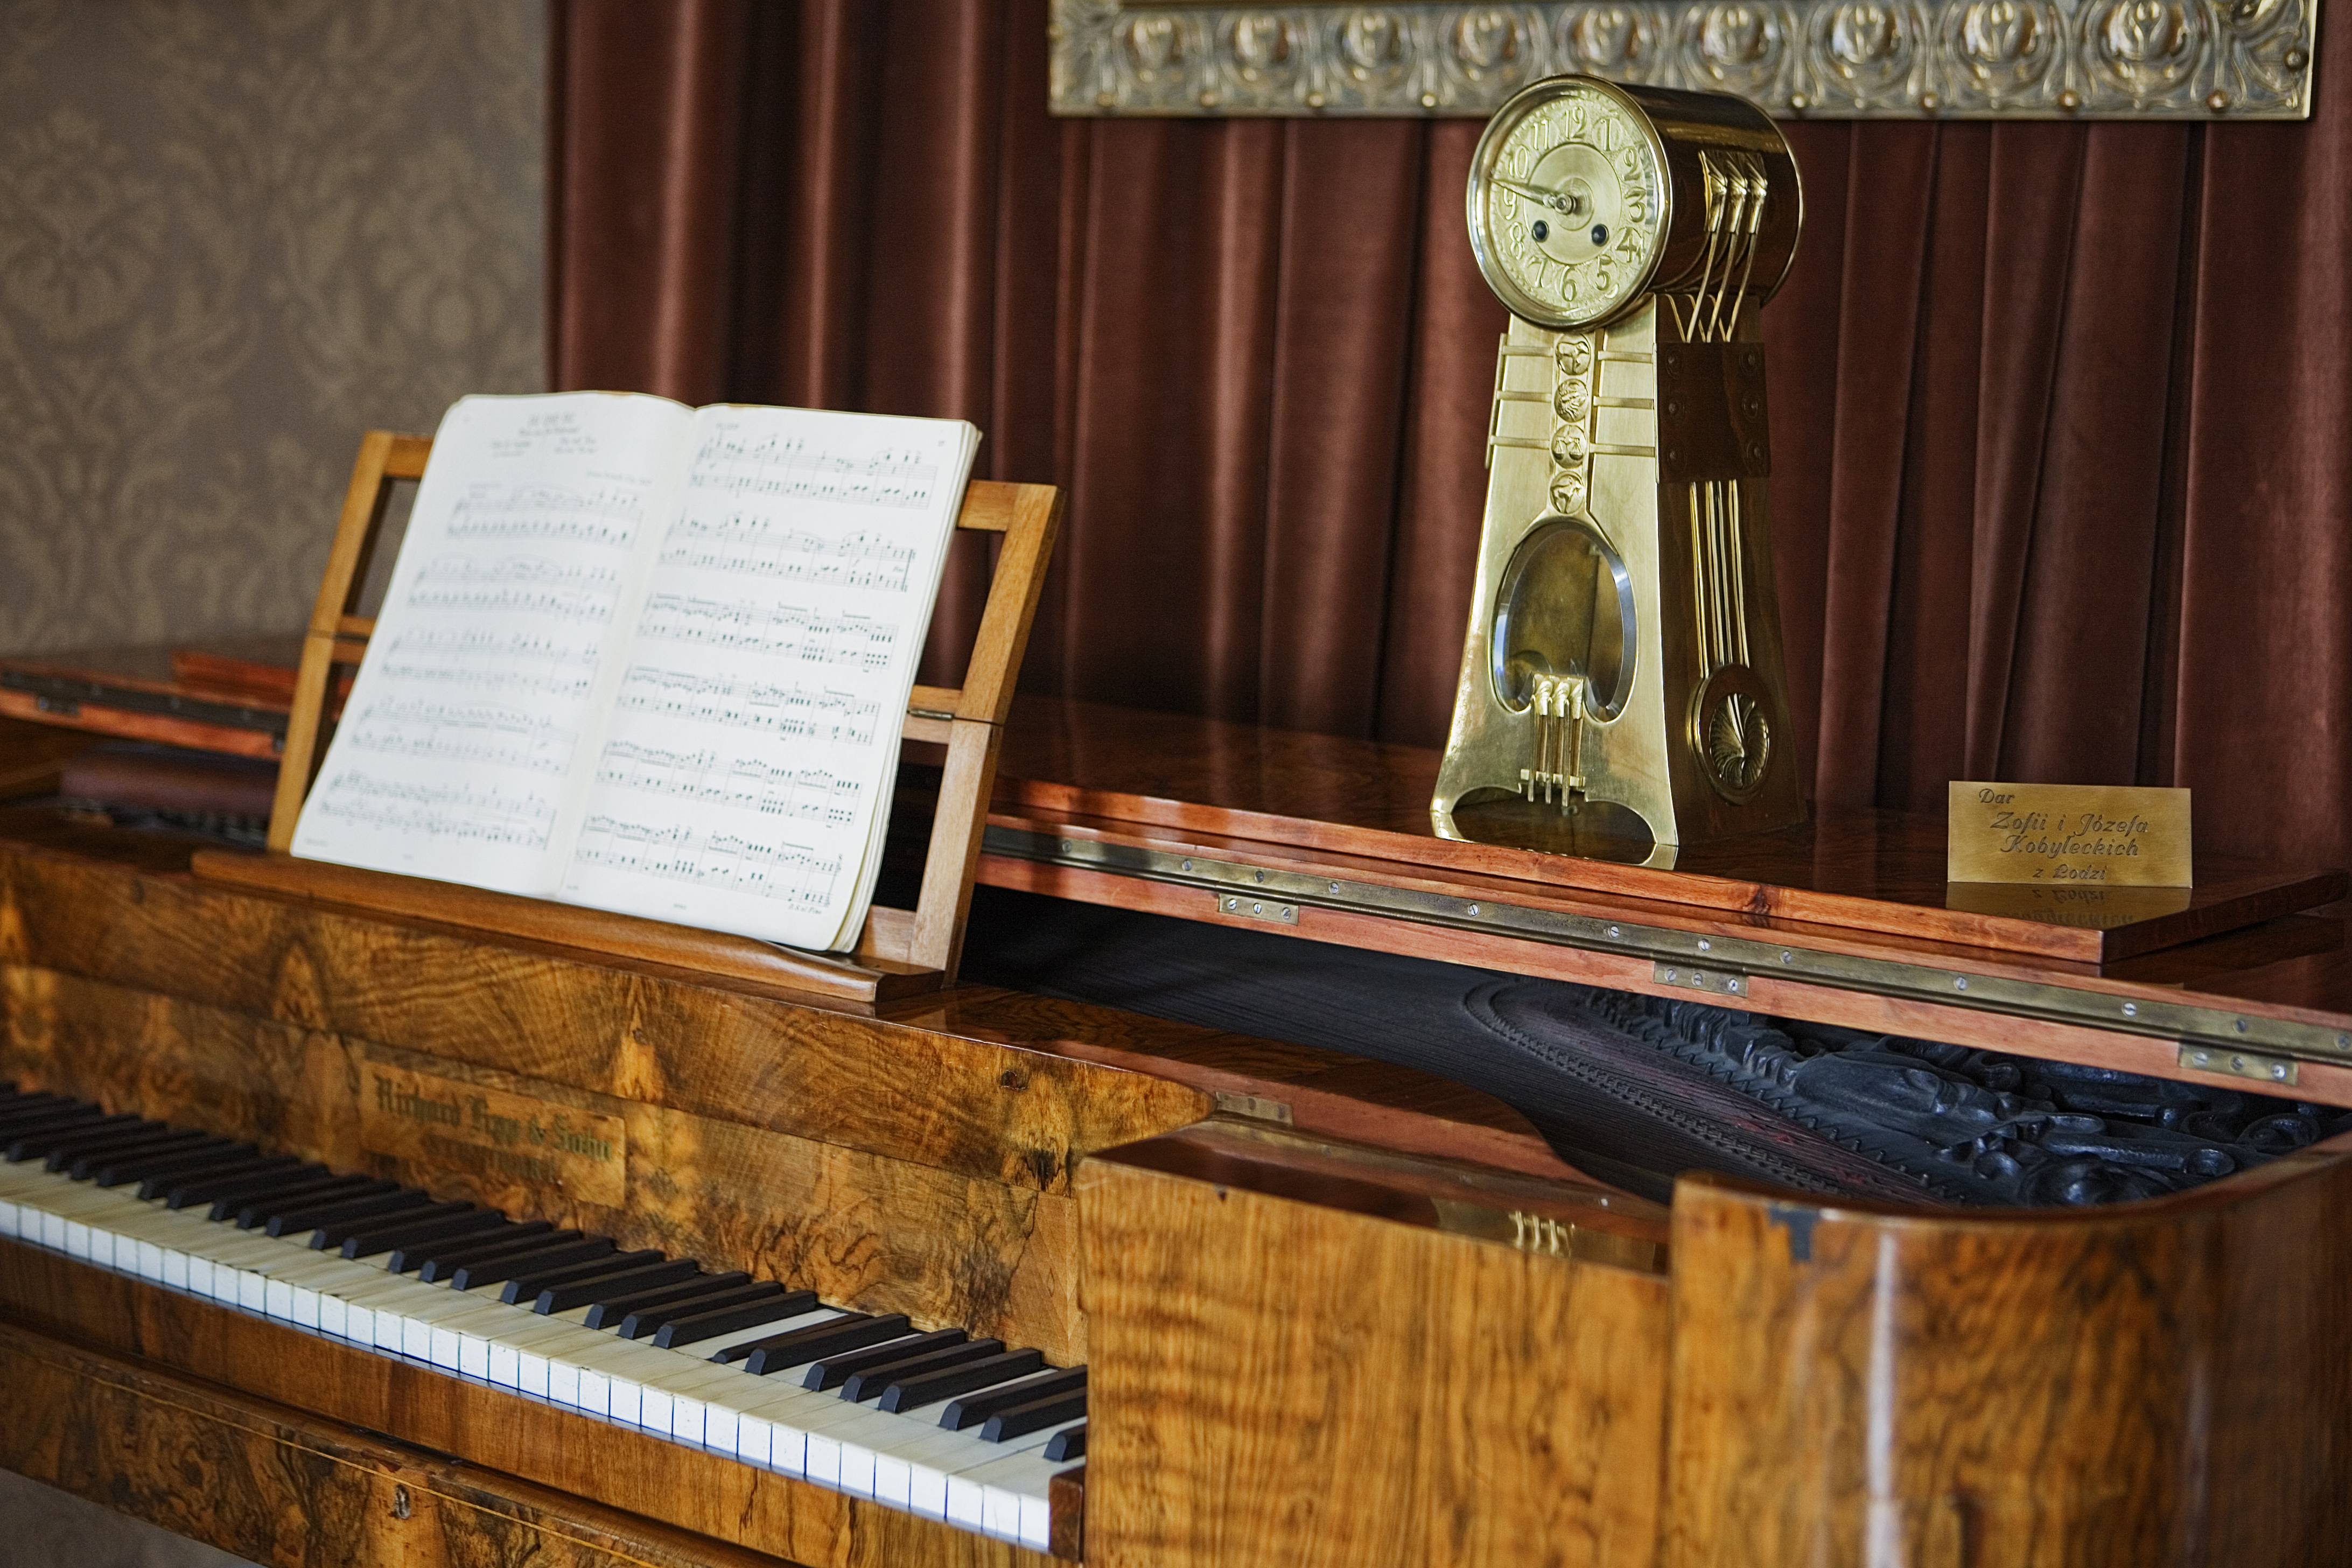 Zbliżenie na fortepian salonowy z jasnego drewna, z uchylona klapa i stojący na nim zabytkowy zegar mechaniczny.